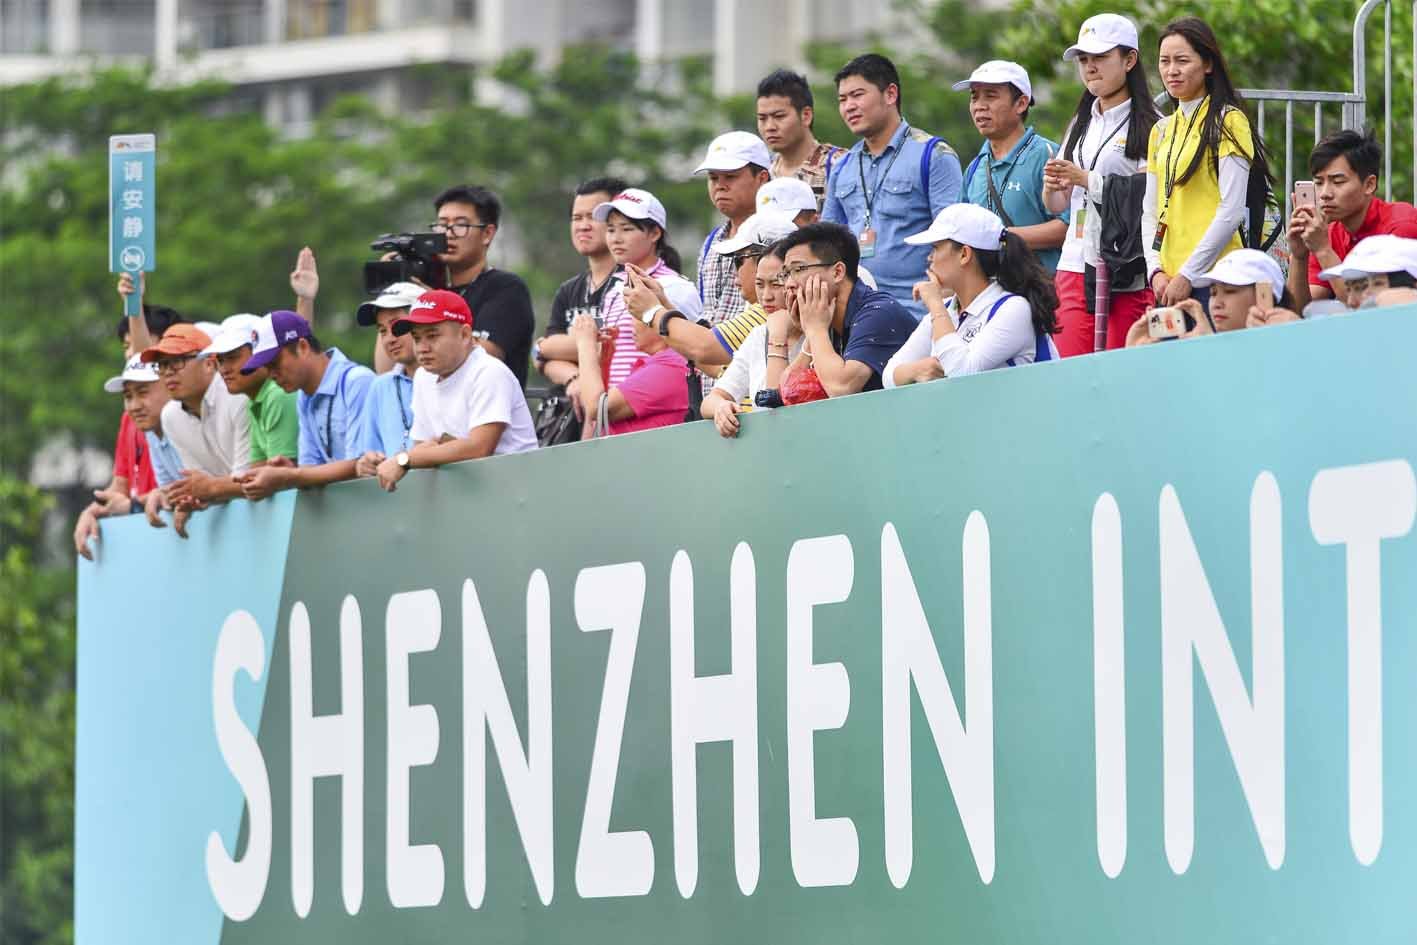 Shenzhen International, Your Ho